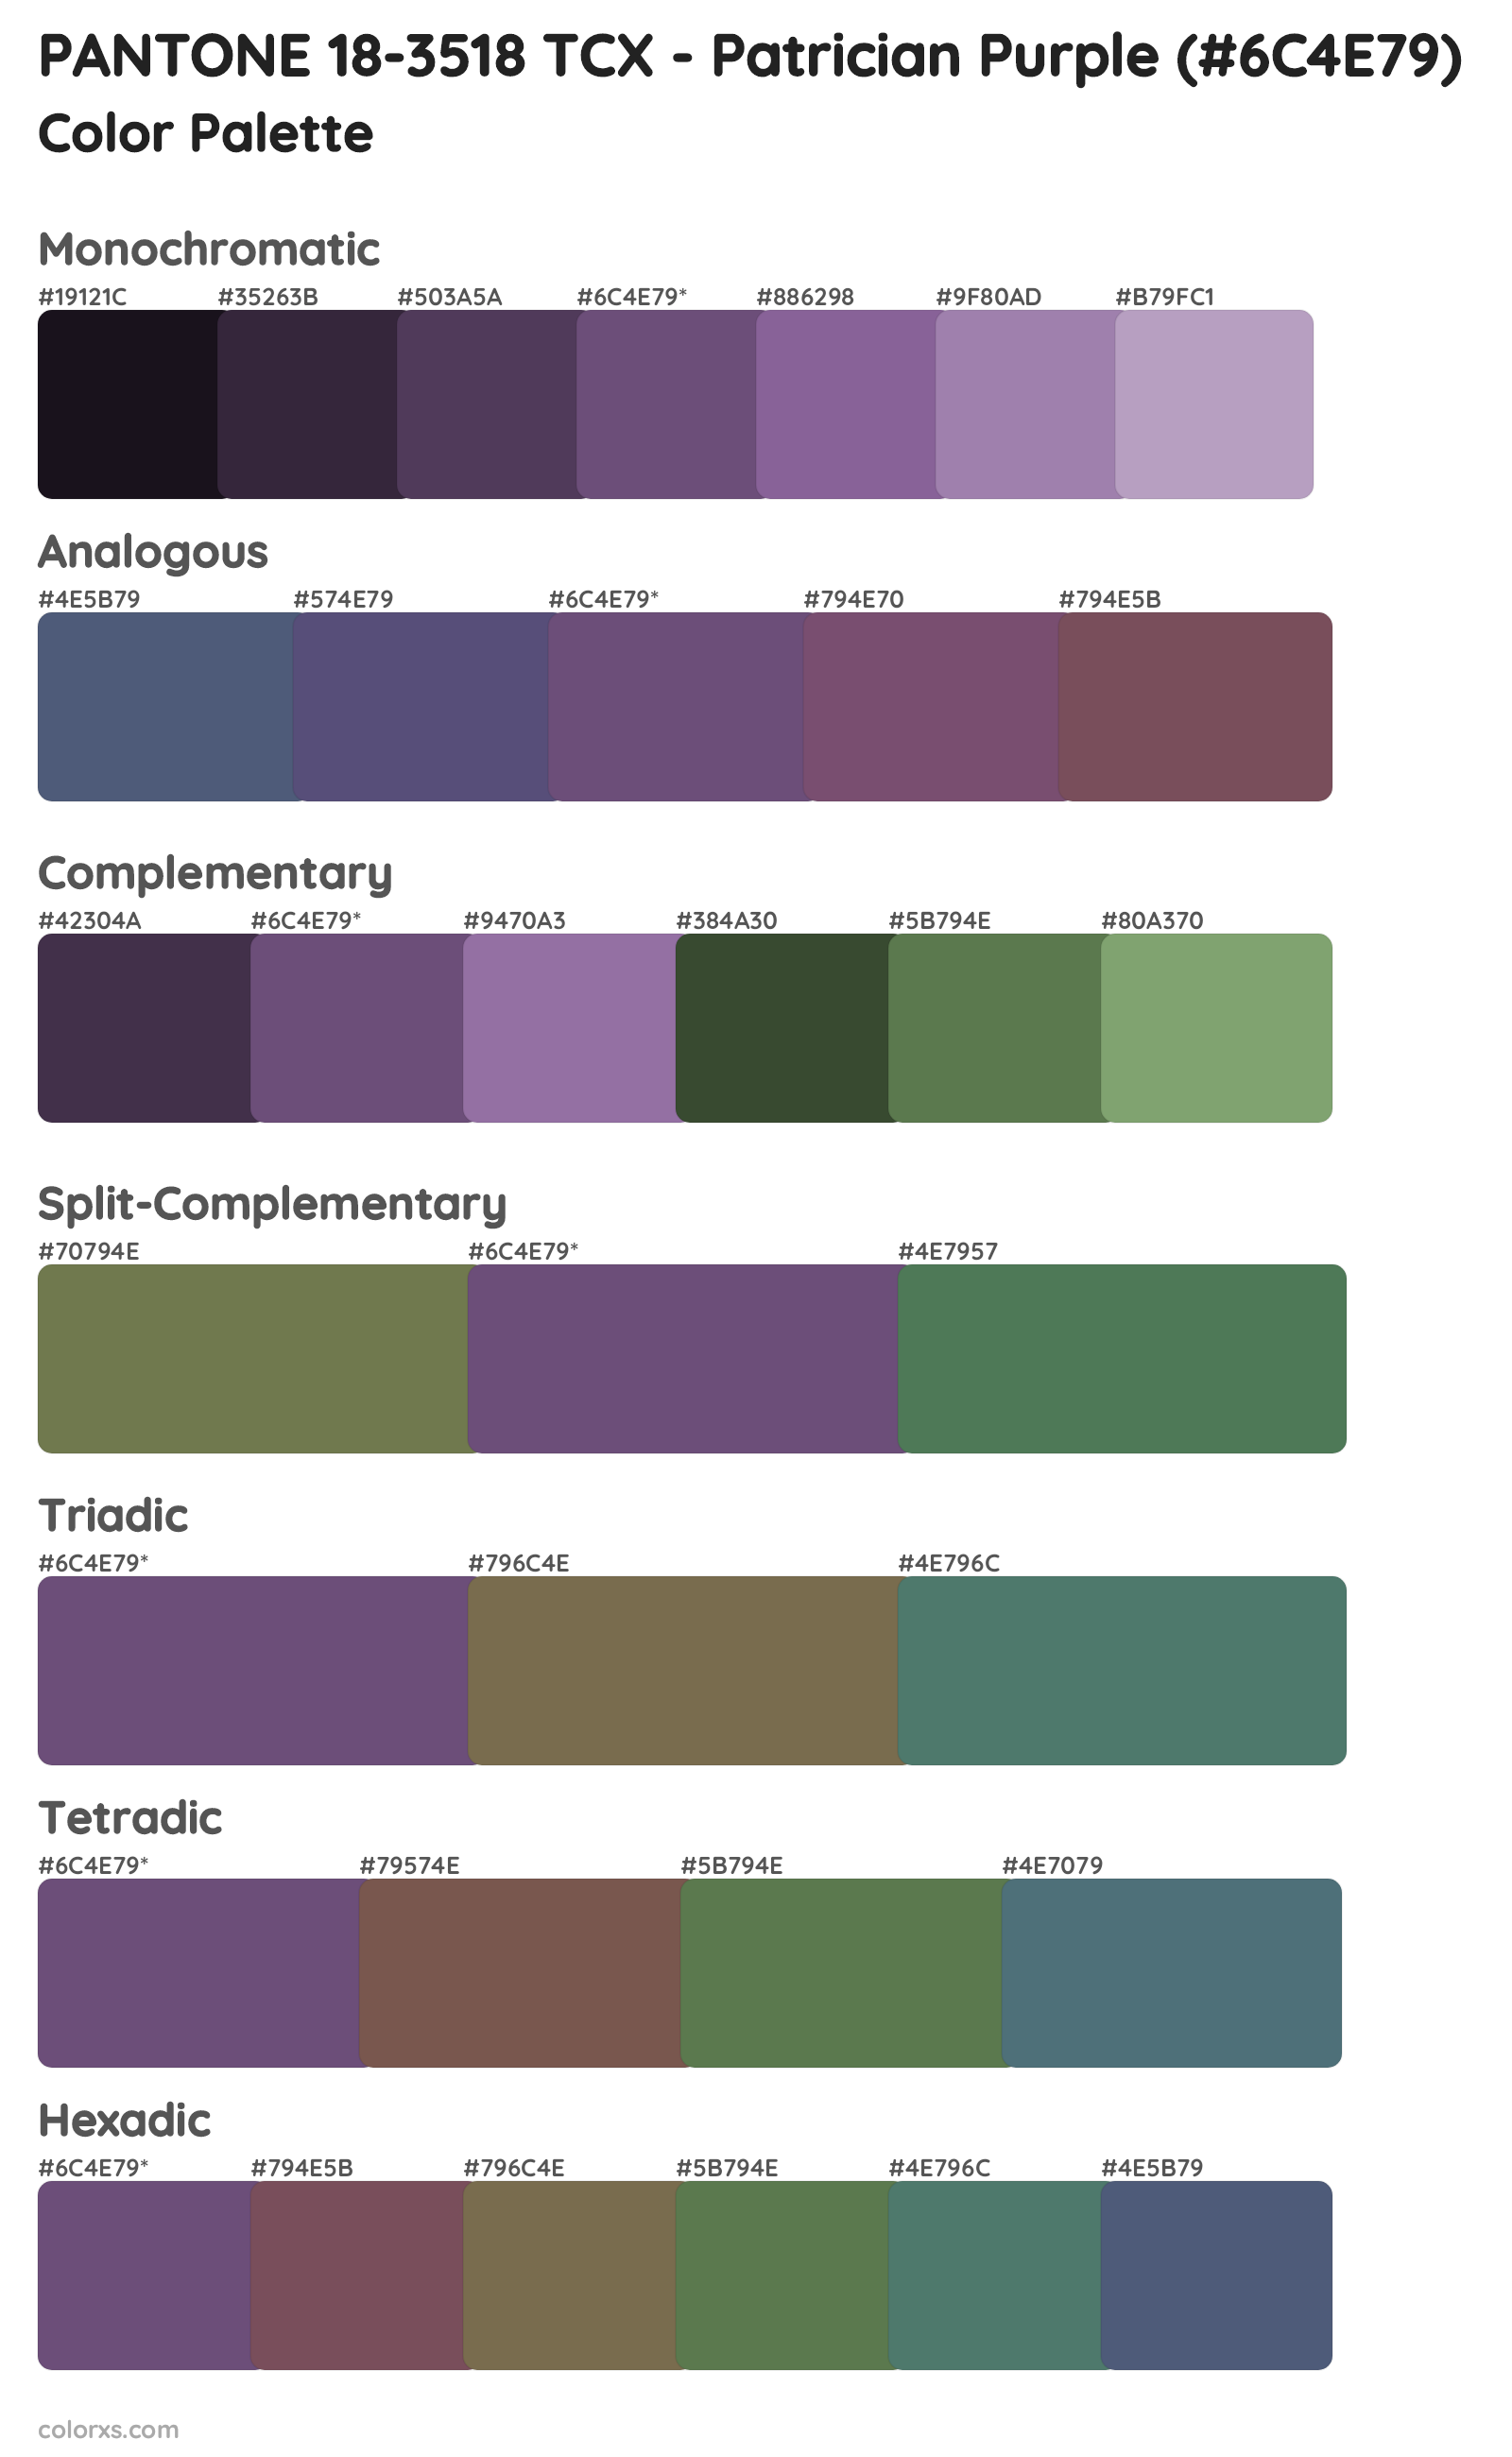 PANTONE 18-3518 TCX - Patrician Purple Color Scheme Palettes